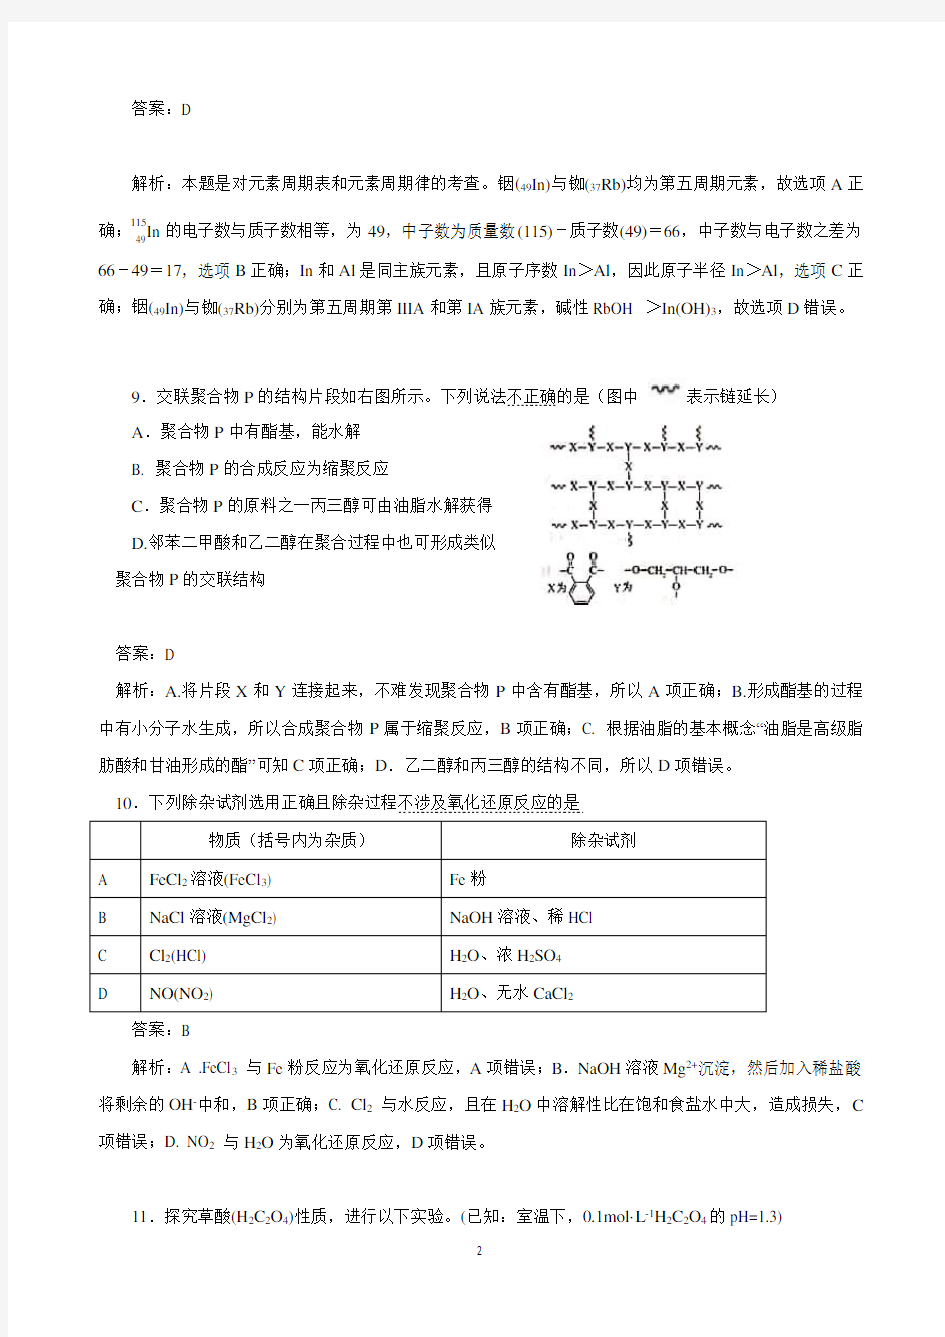 2019高考北京卷化学试题(解析版)